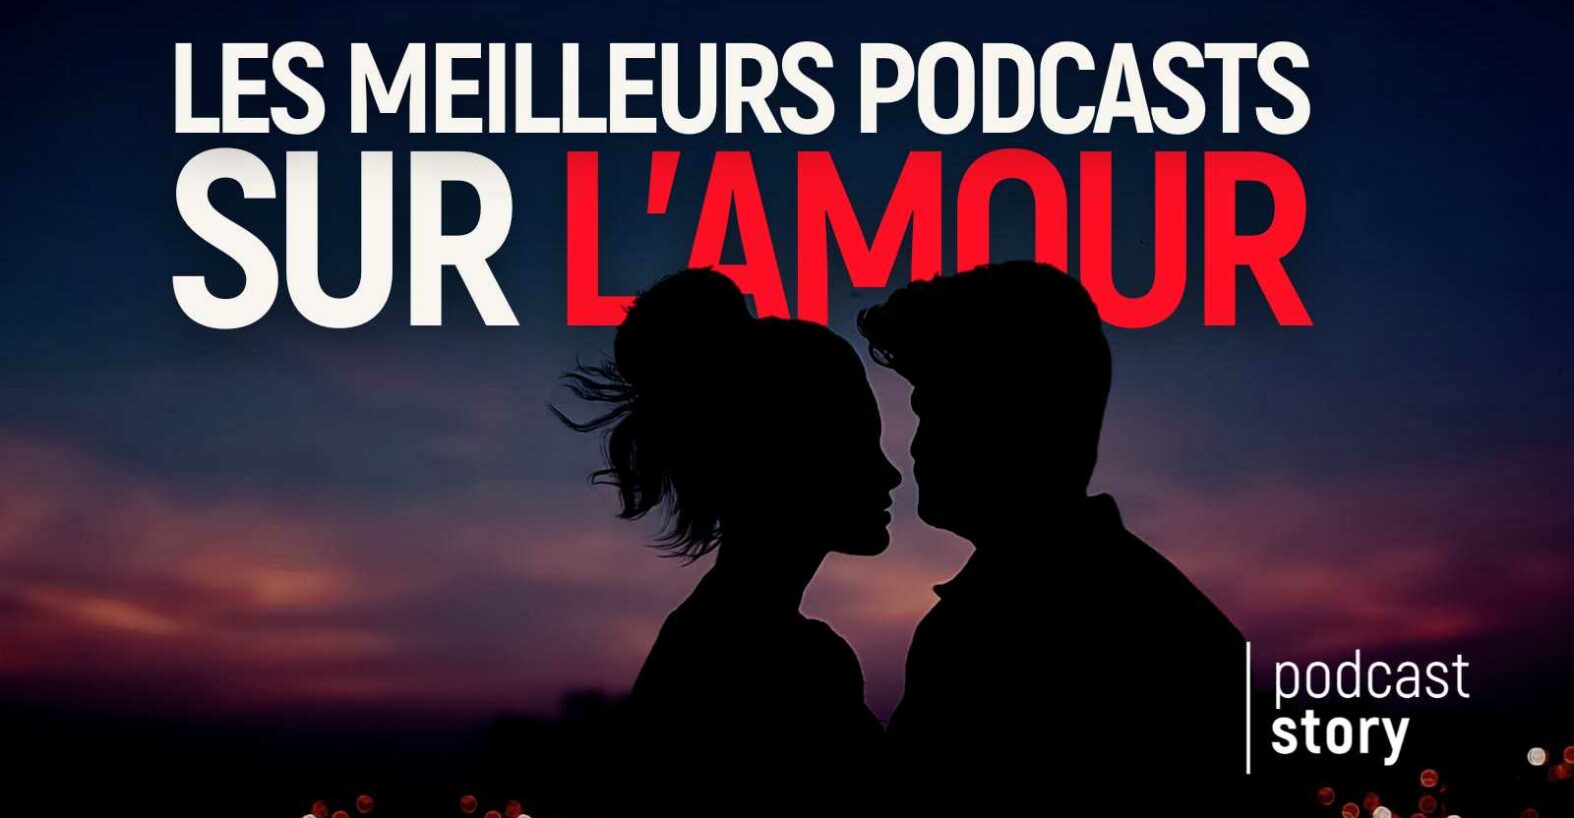 Les meilleurs podcasts sur l’amour